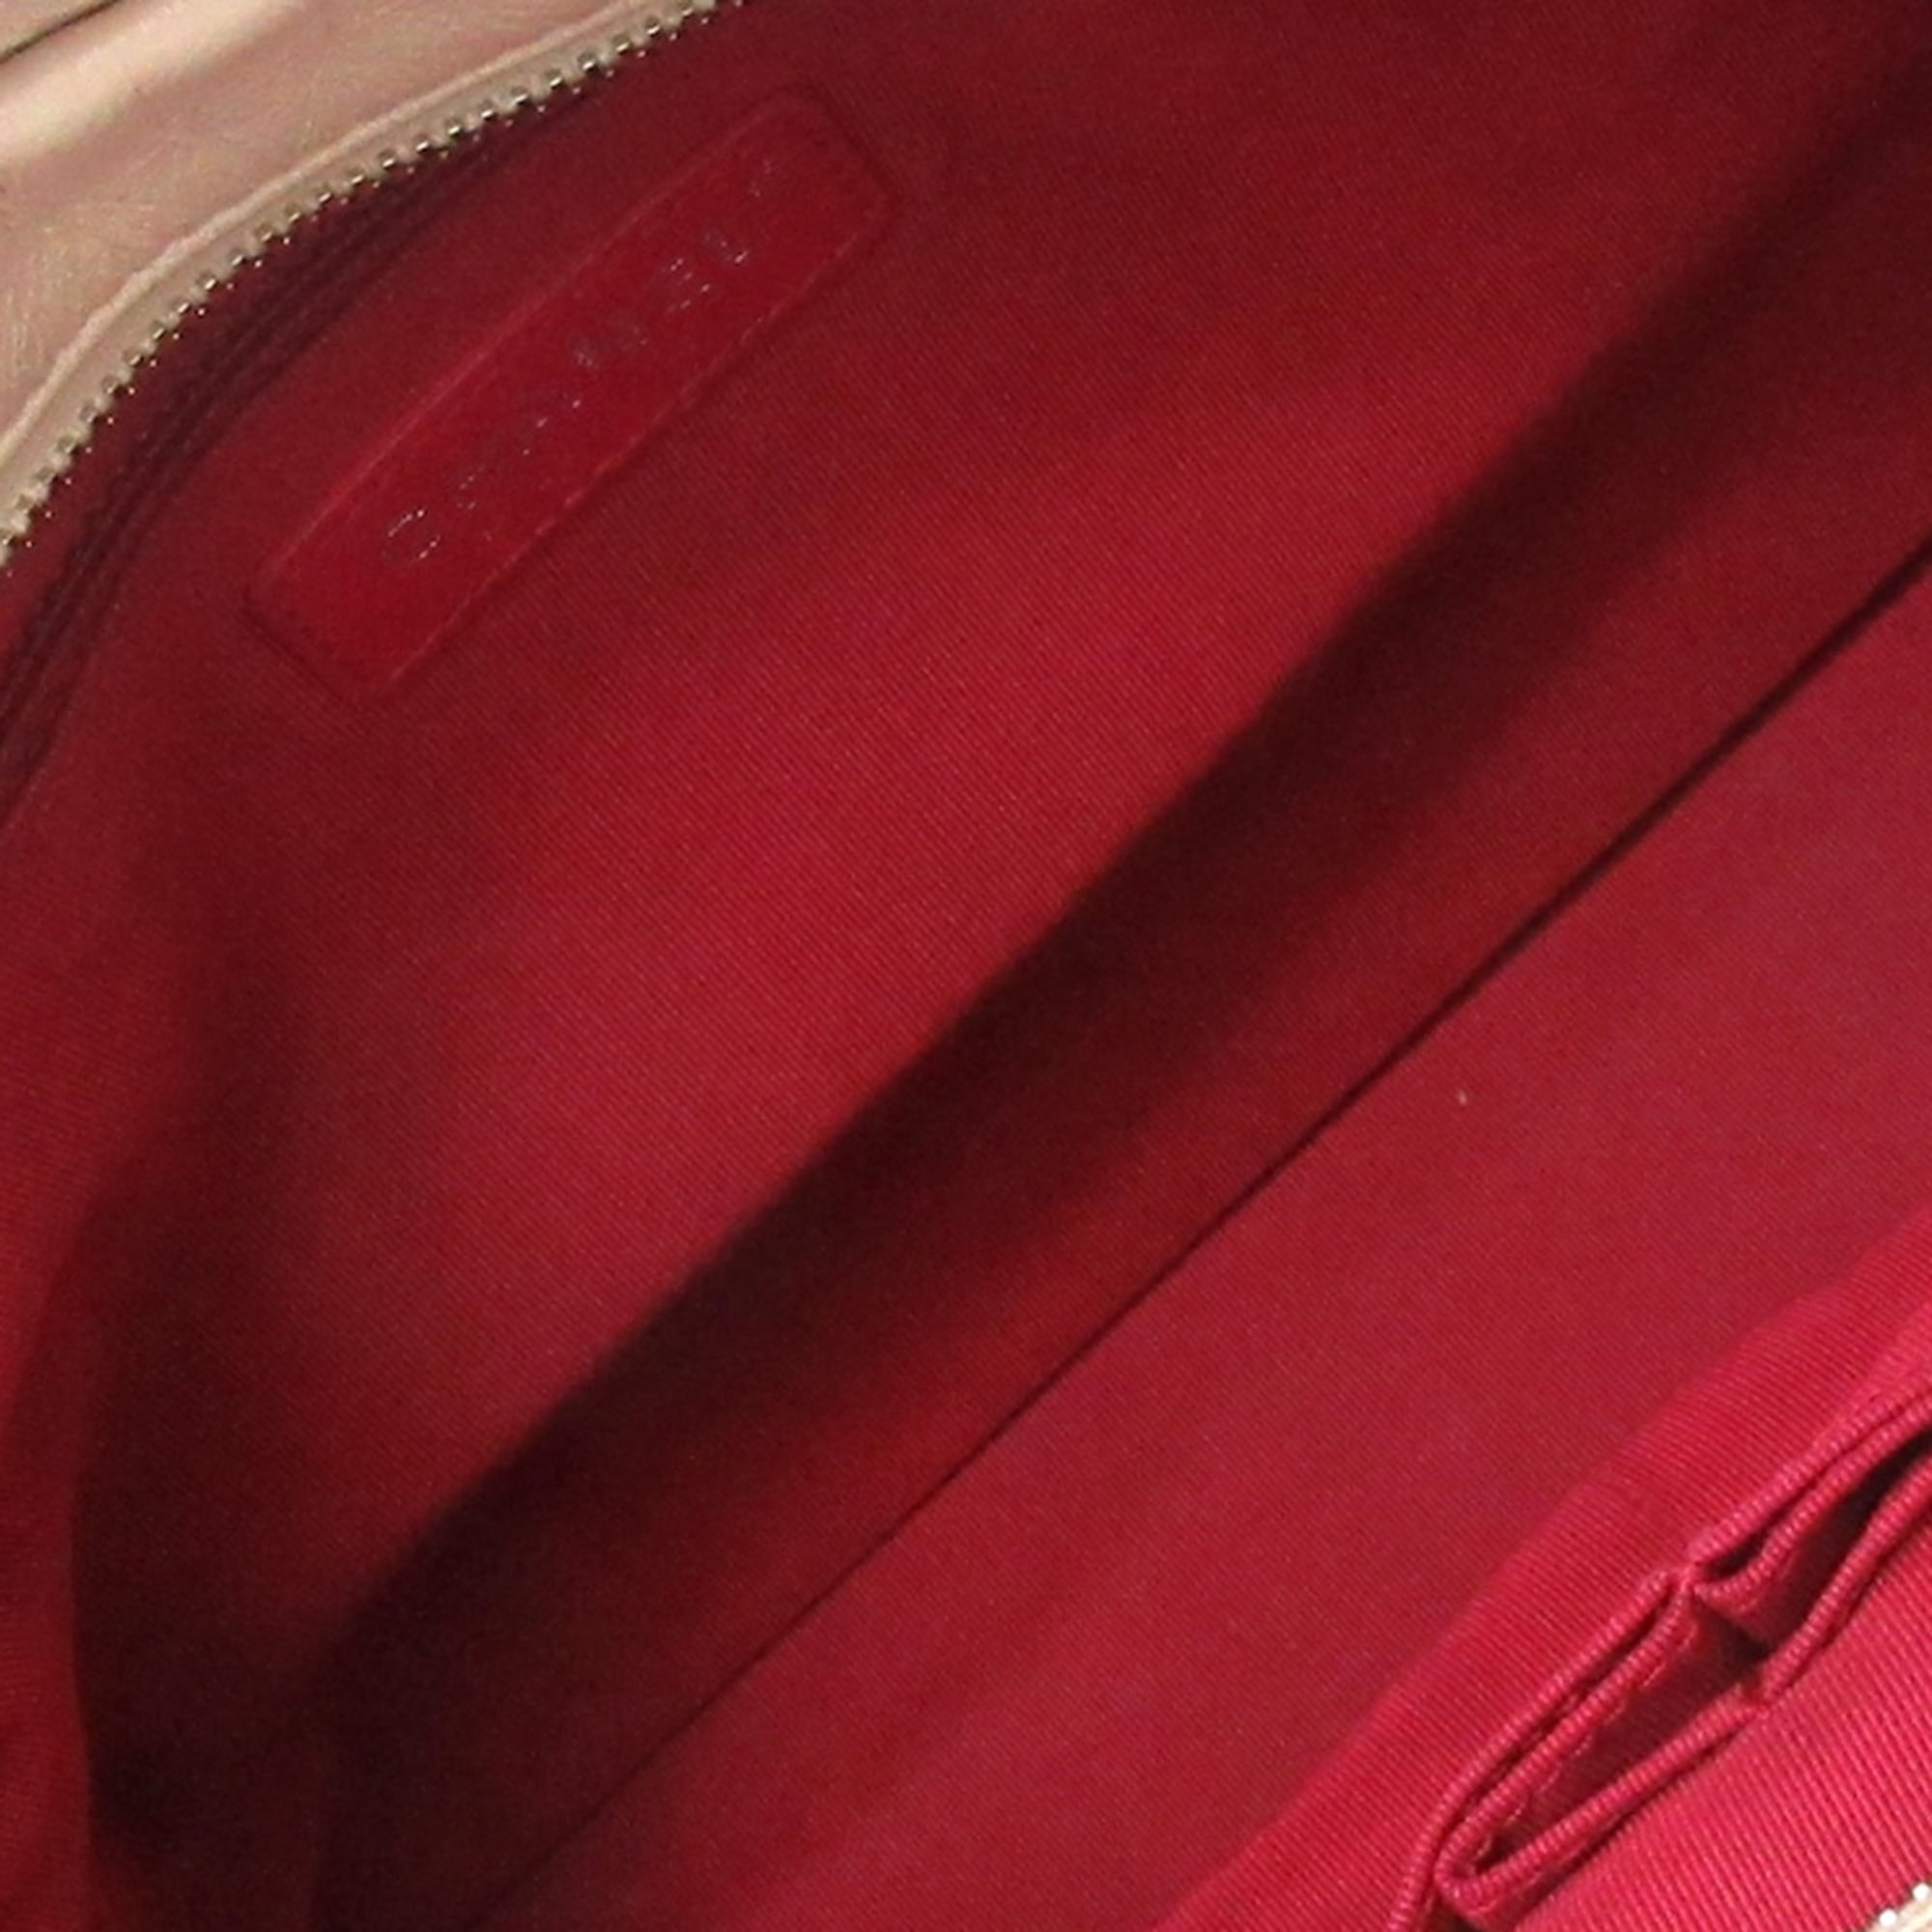 Chanel Beige Leather Gabrielle Shoulder Bag